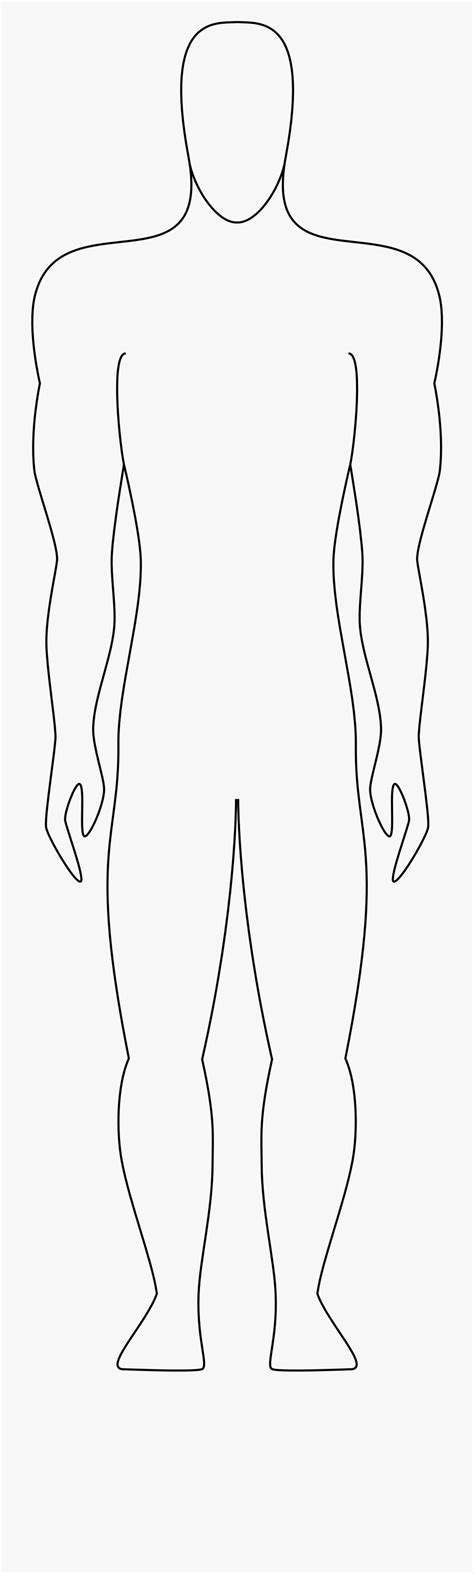 Printable Outline Of Human Body